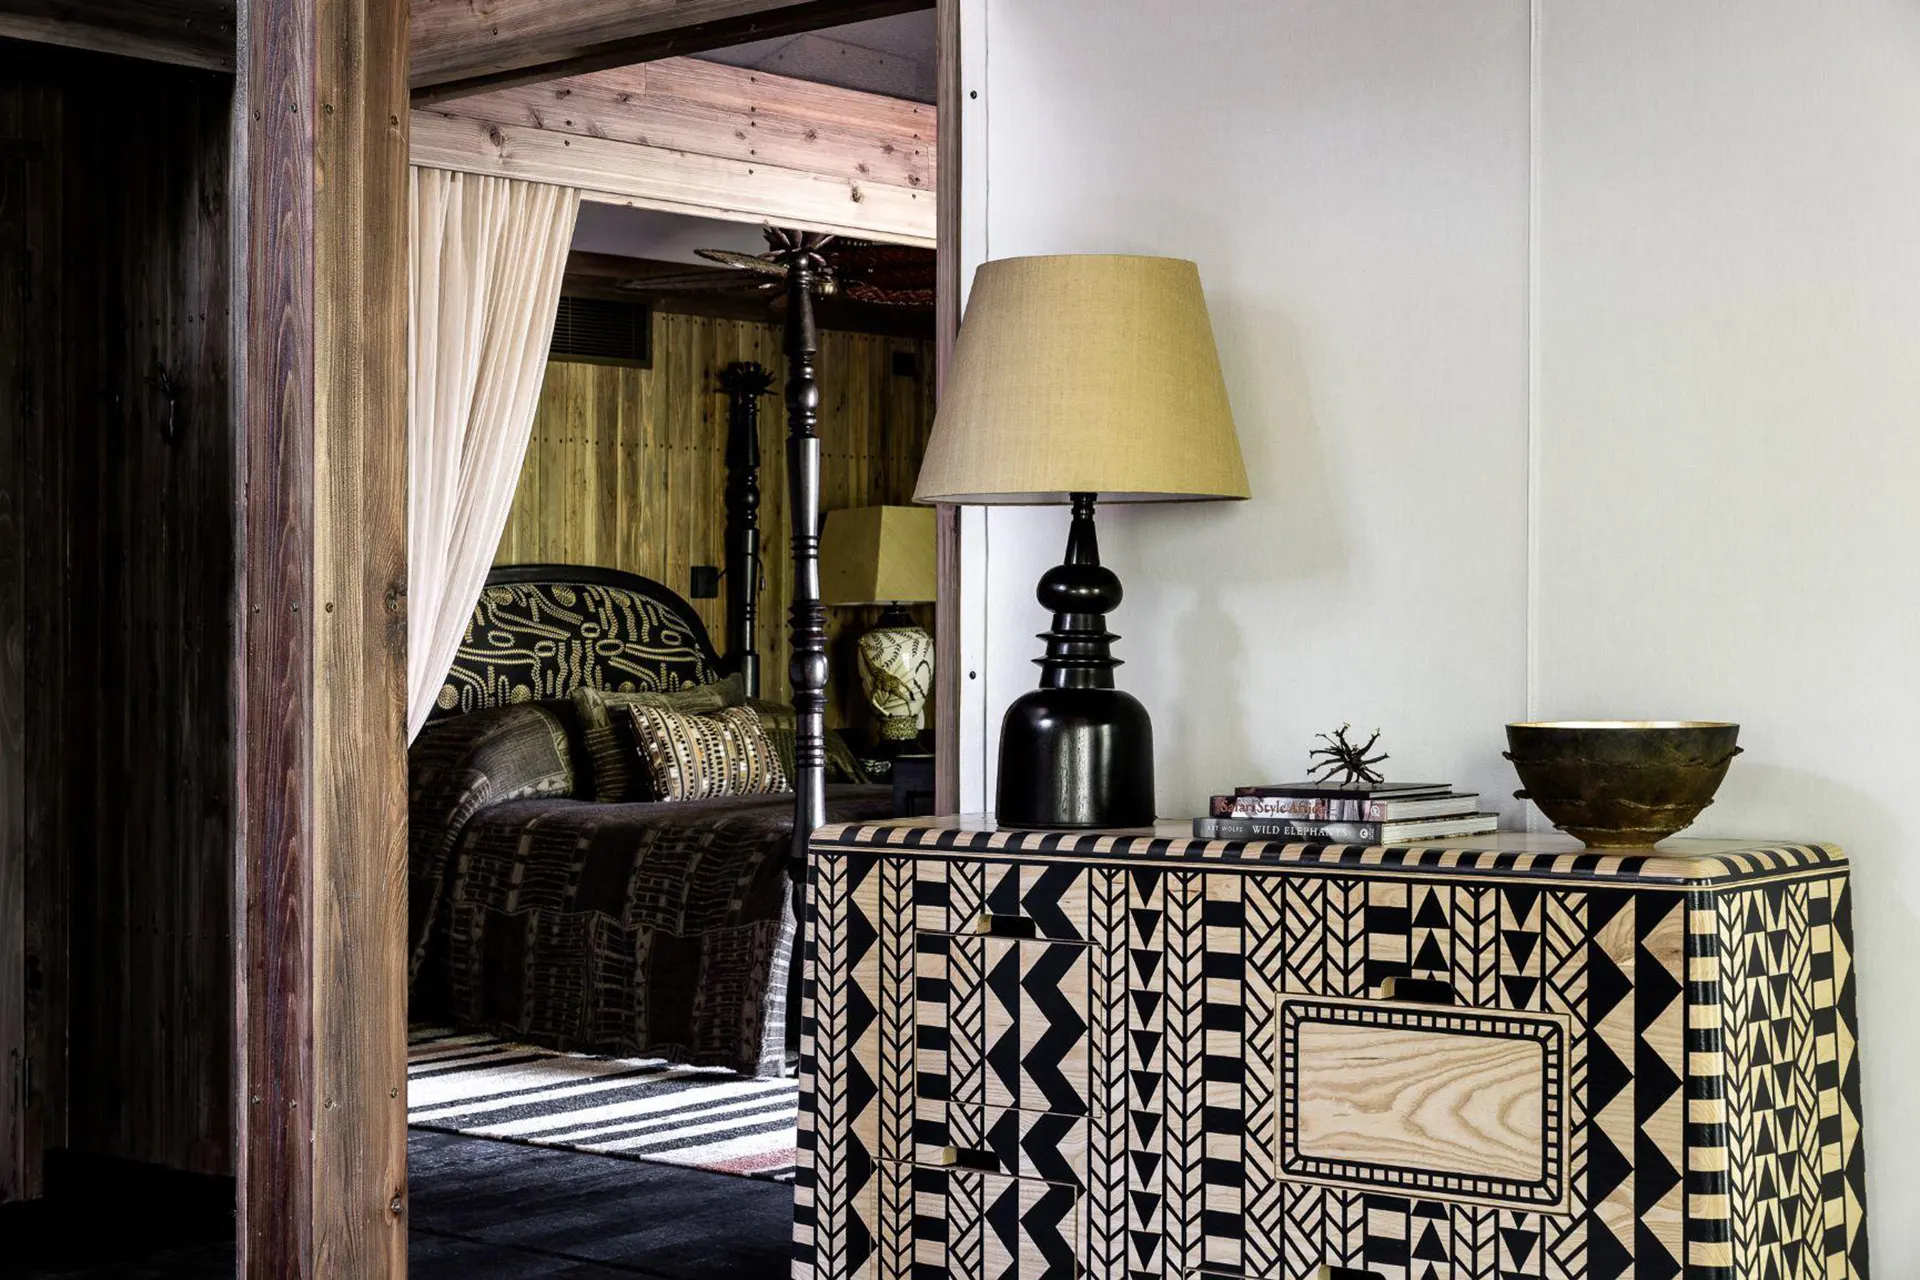 Blick in ein Schlafzimmer im afrikanischen Stil